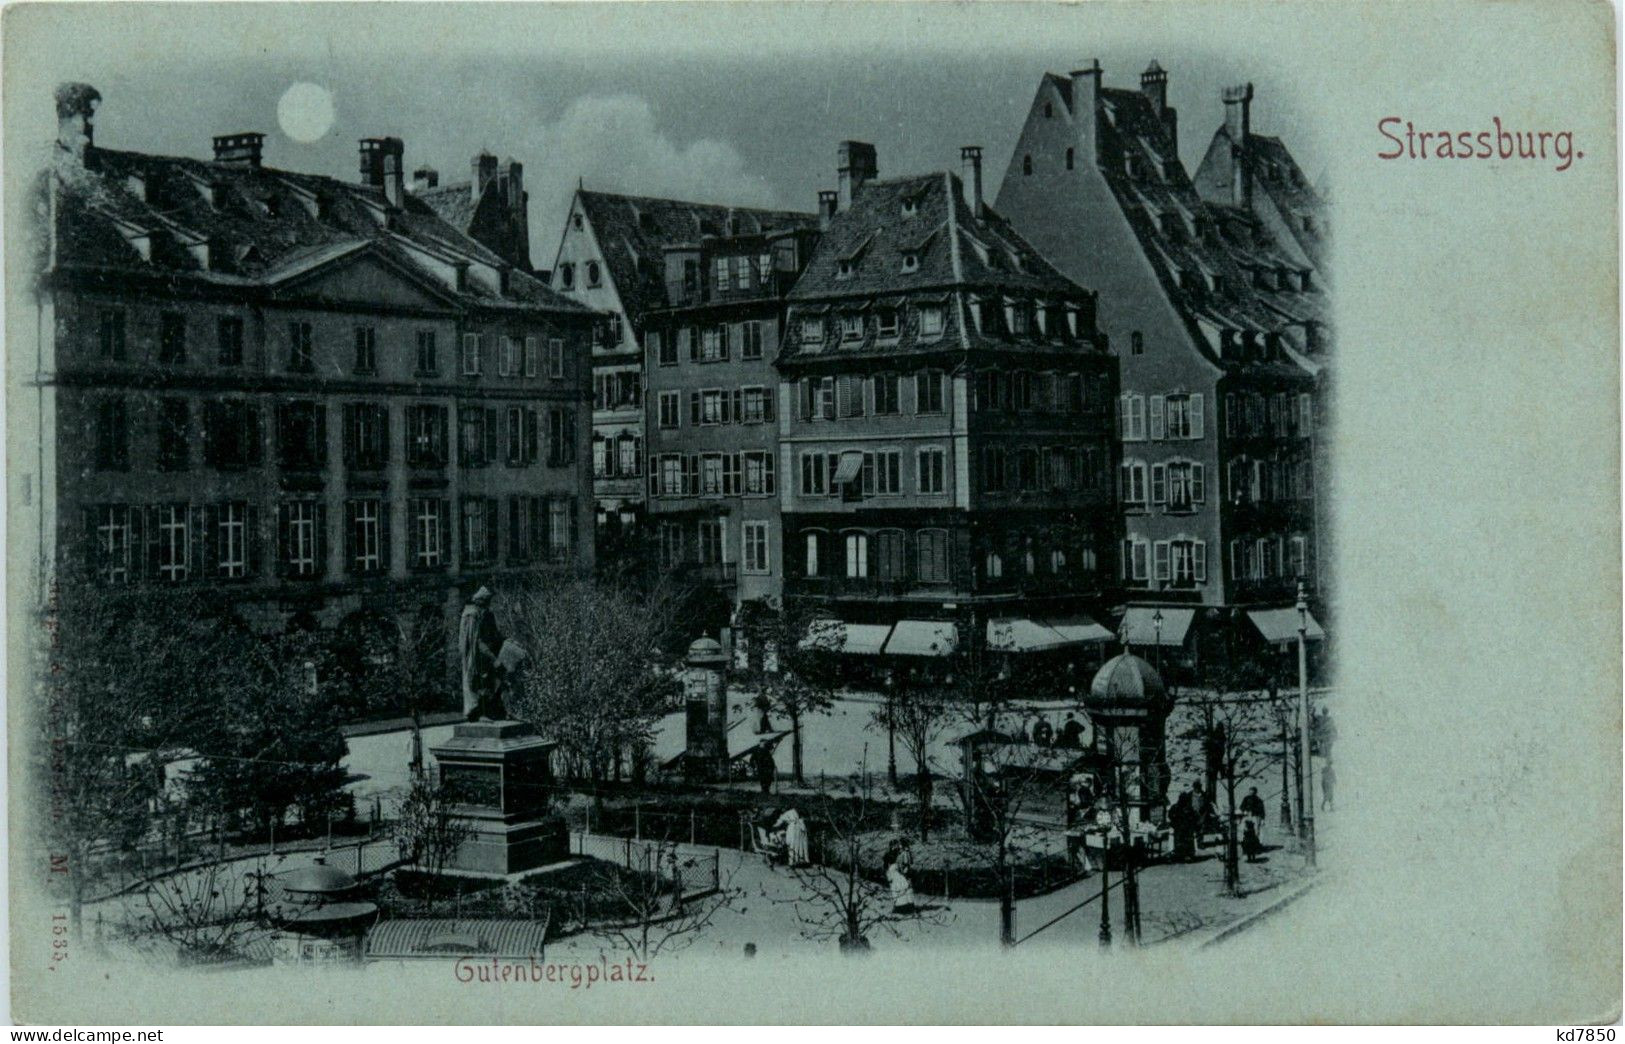 Strassburg - Gutenbergplatz - Strasbourg